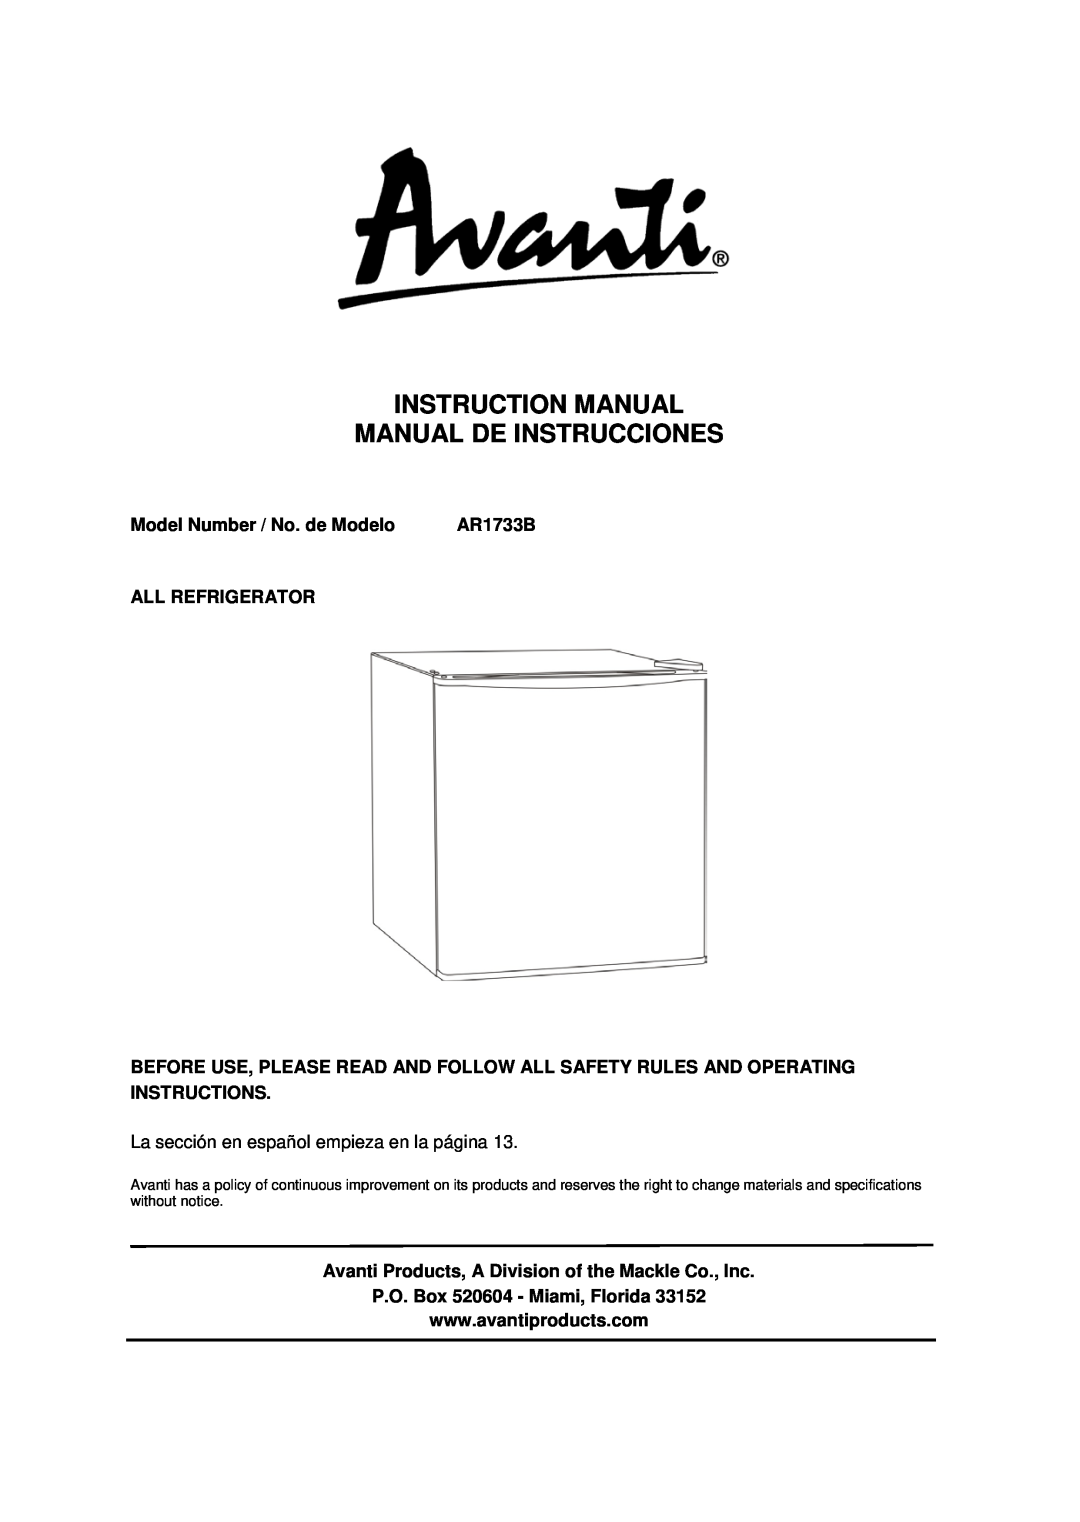 Avanti AR1733B instruction manual Model Number / No. de Modelo, All Refrigerator, P.O. Box 520604 - Miami, Florida 